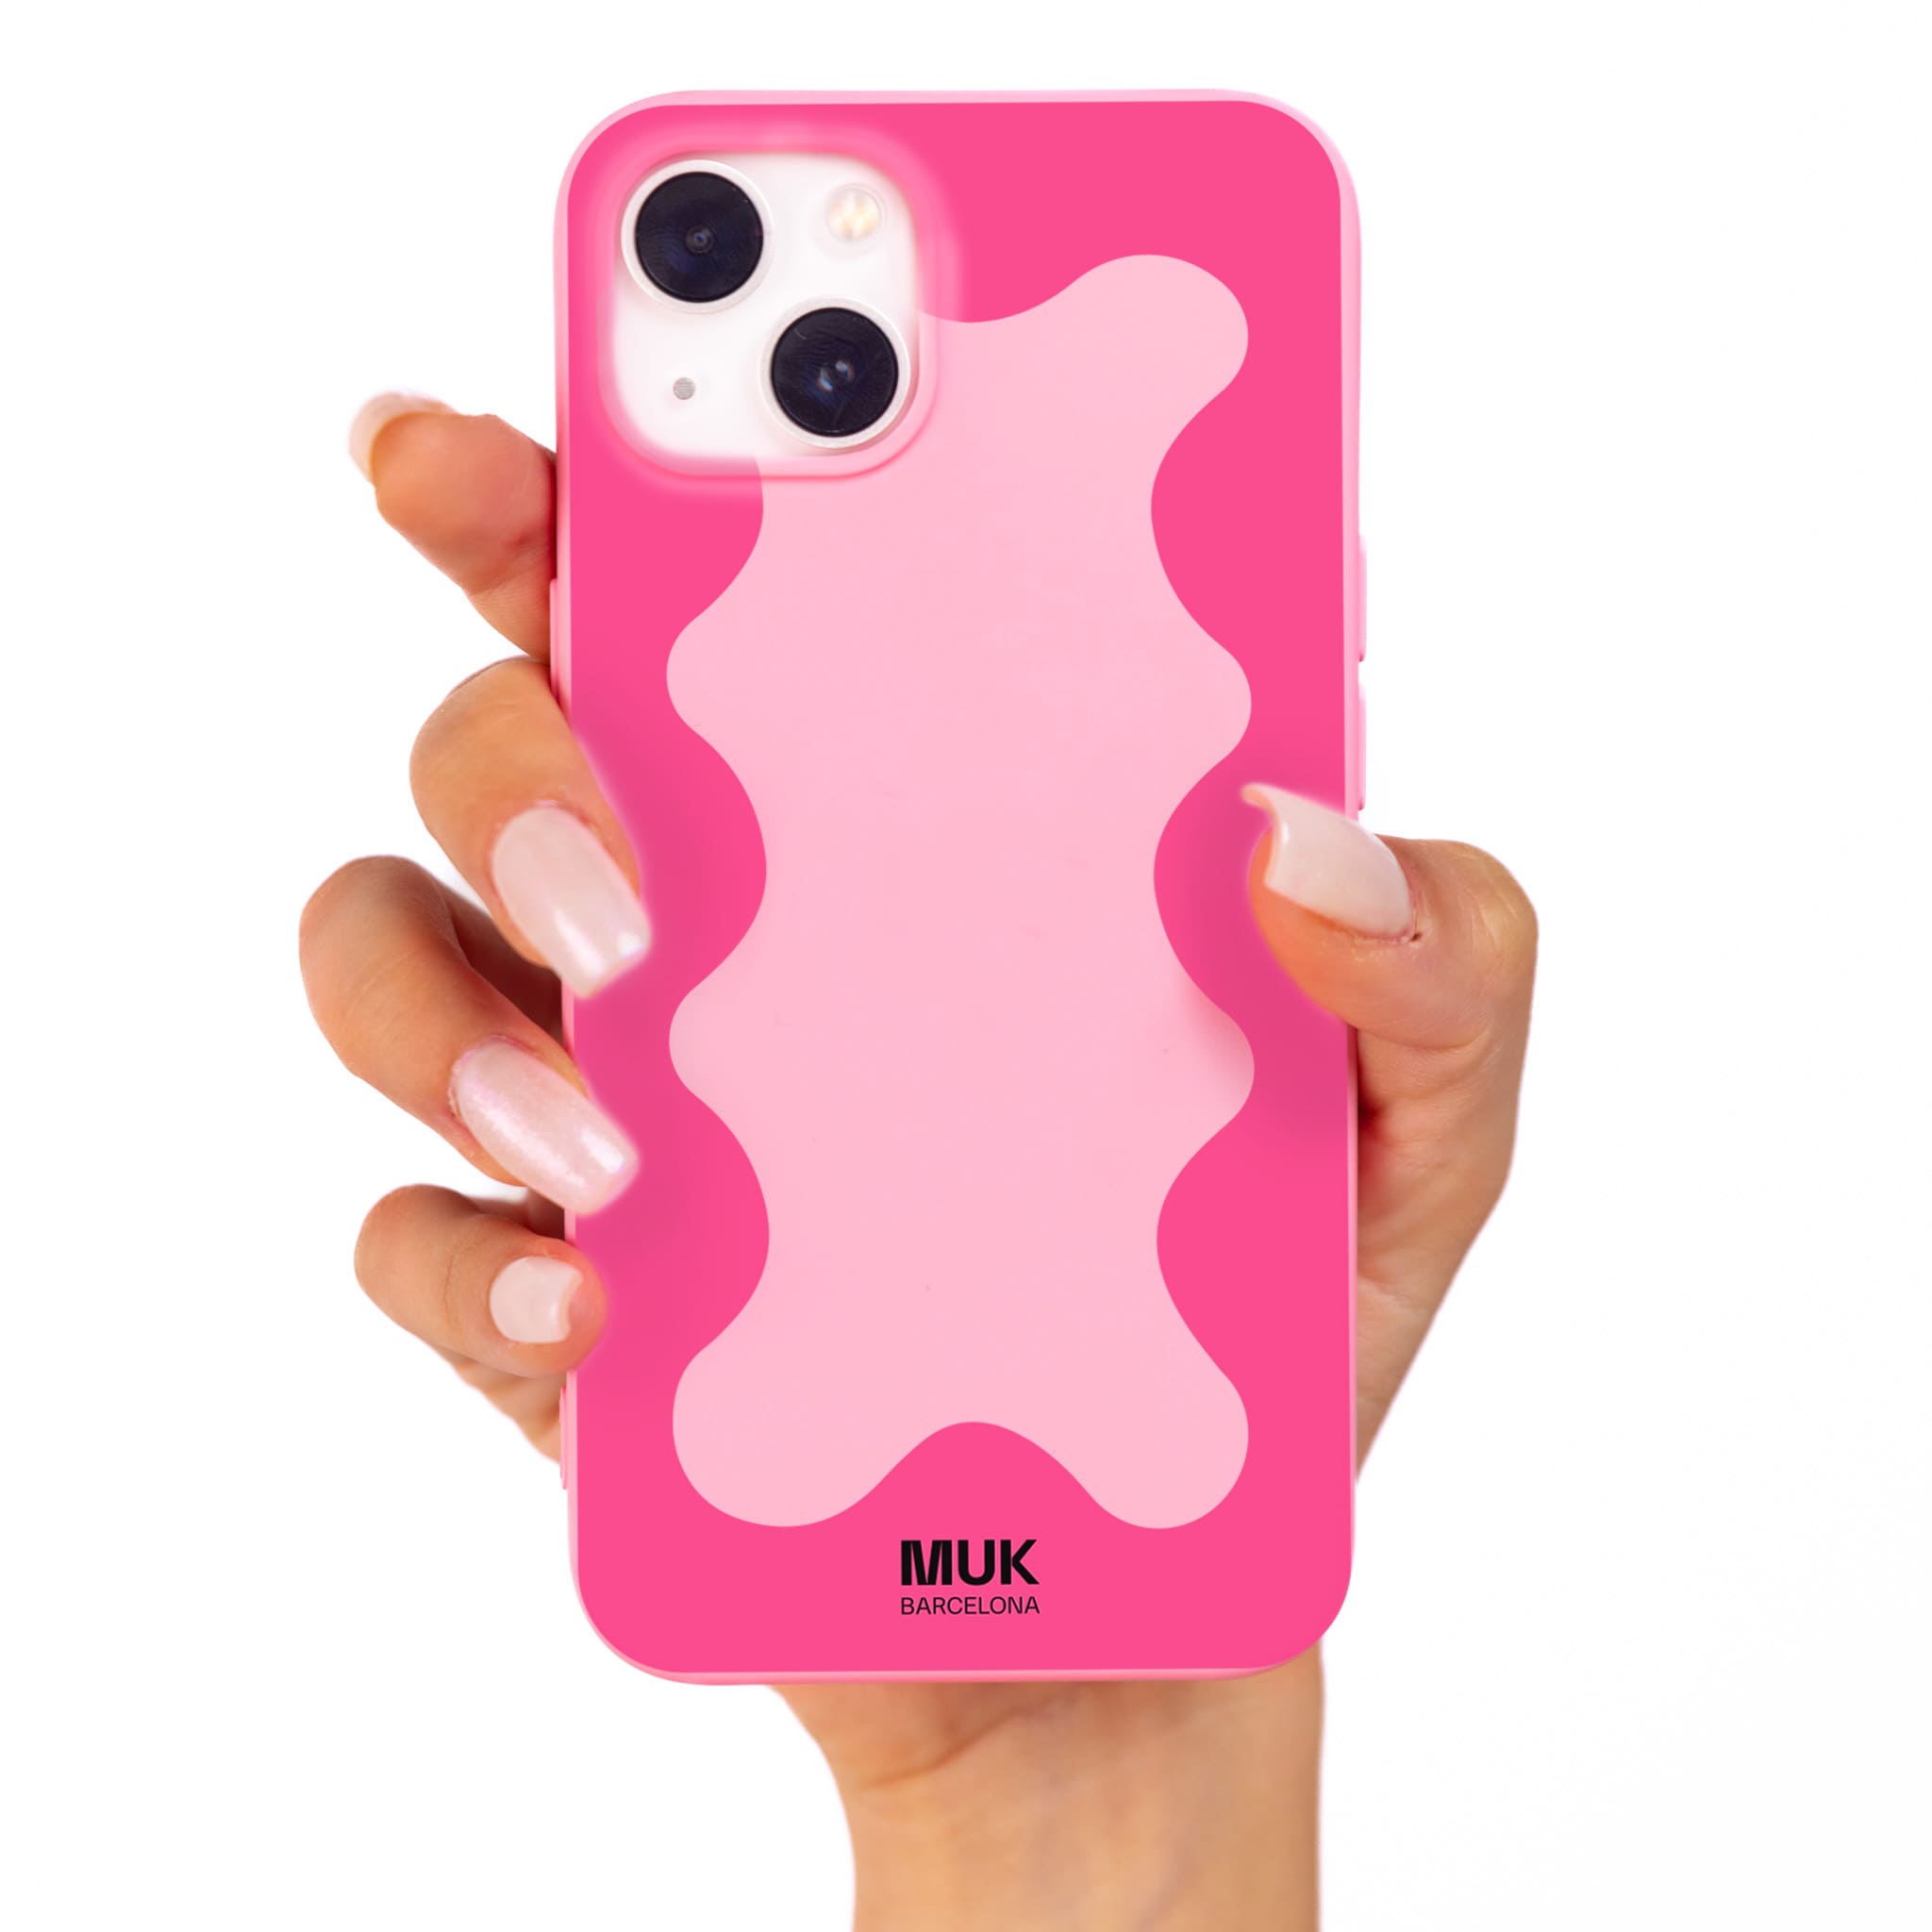 Funda de móvil TPU rosa con diseño de marco ondulado en color rosa.
